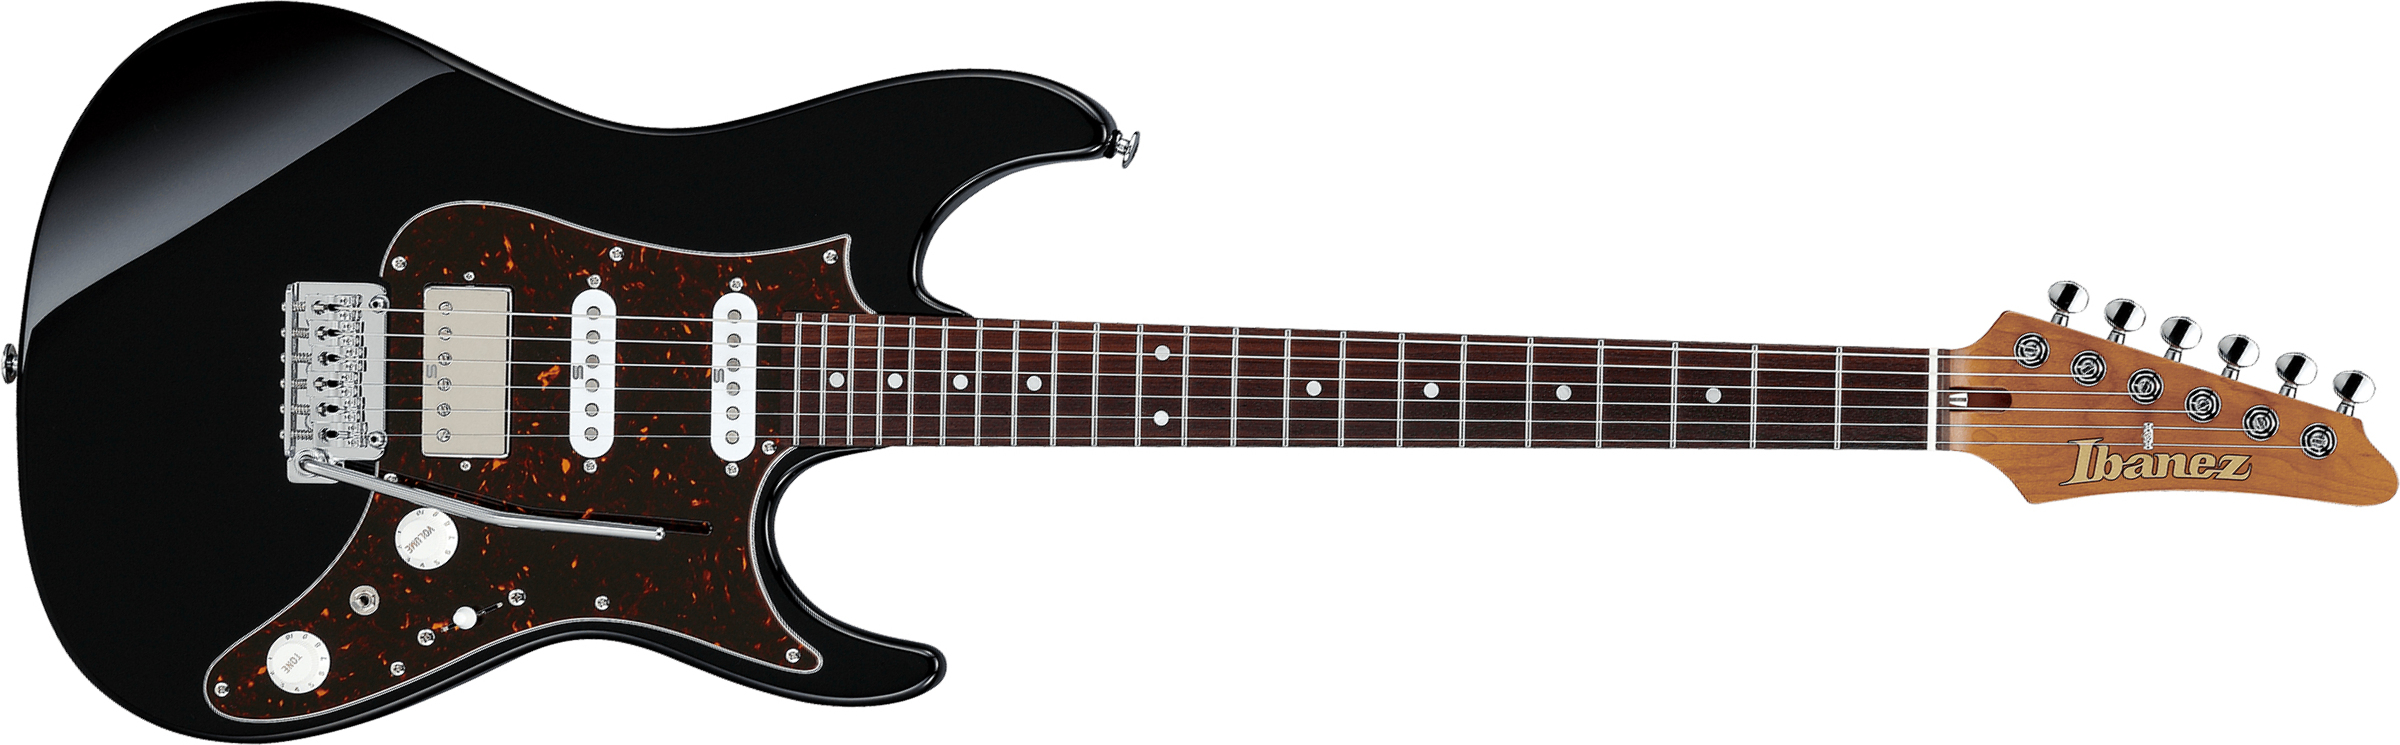 Ibanez Az2204n Bk Prestige Jap Hss Seymour Duncan Trem Rw - Black - Guitare Électrique Forme Str - Main picture